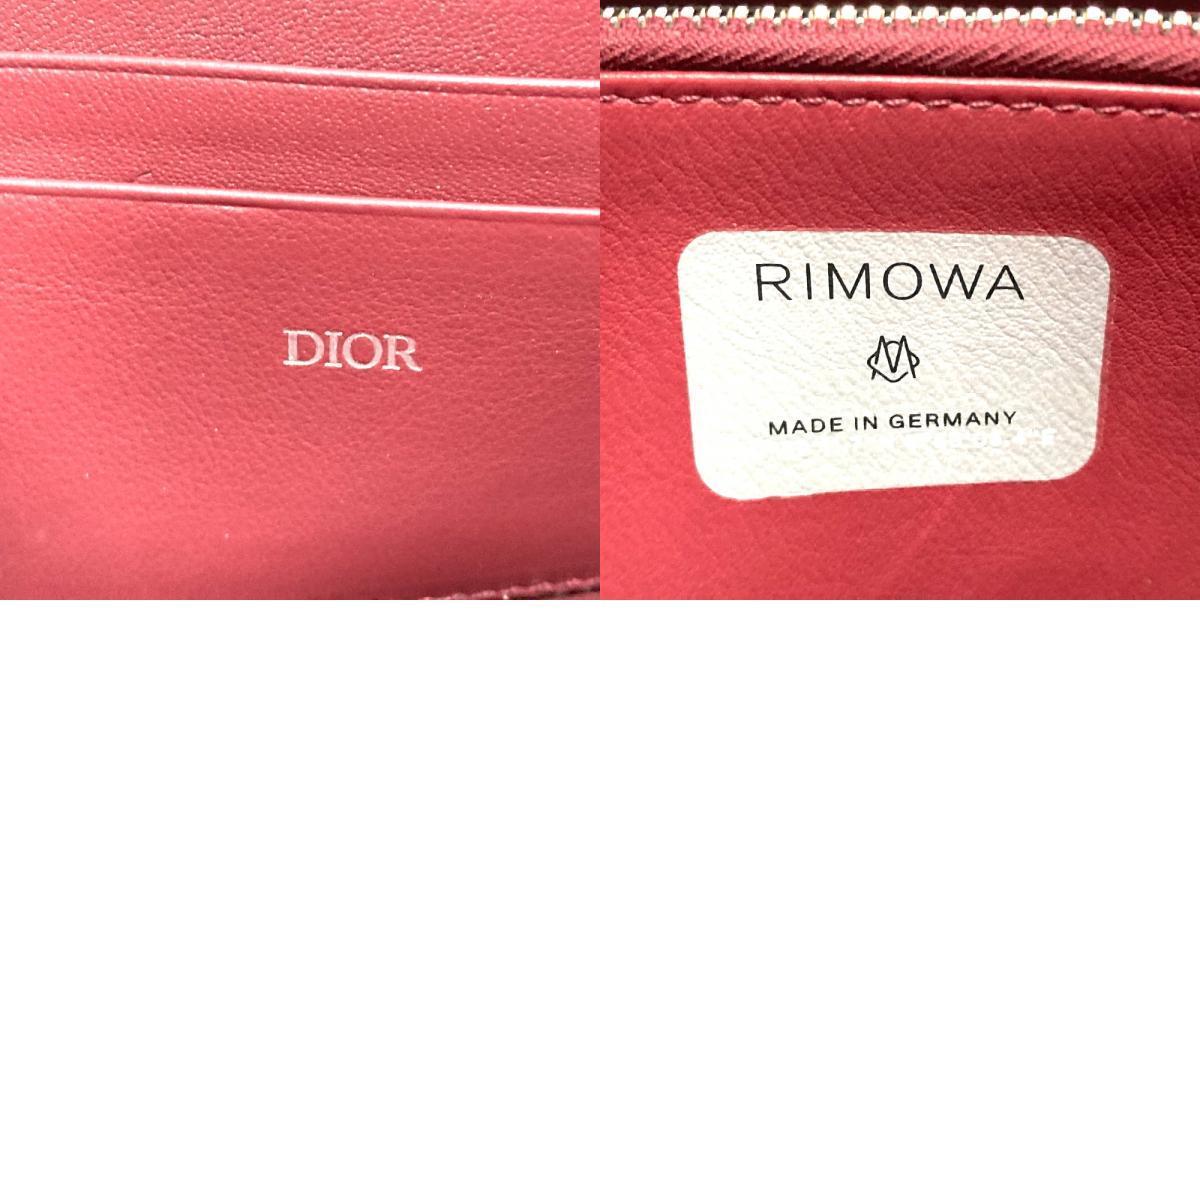 新品同様 Dior ディオール 2DRCA295YWT パーソナルクラッチバッグ ショルダーバッグ リモワコラボ ウォレット クラッチバッグ ピンク